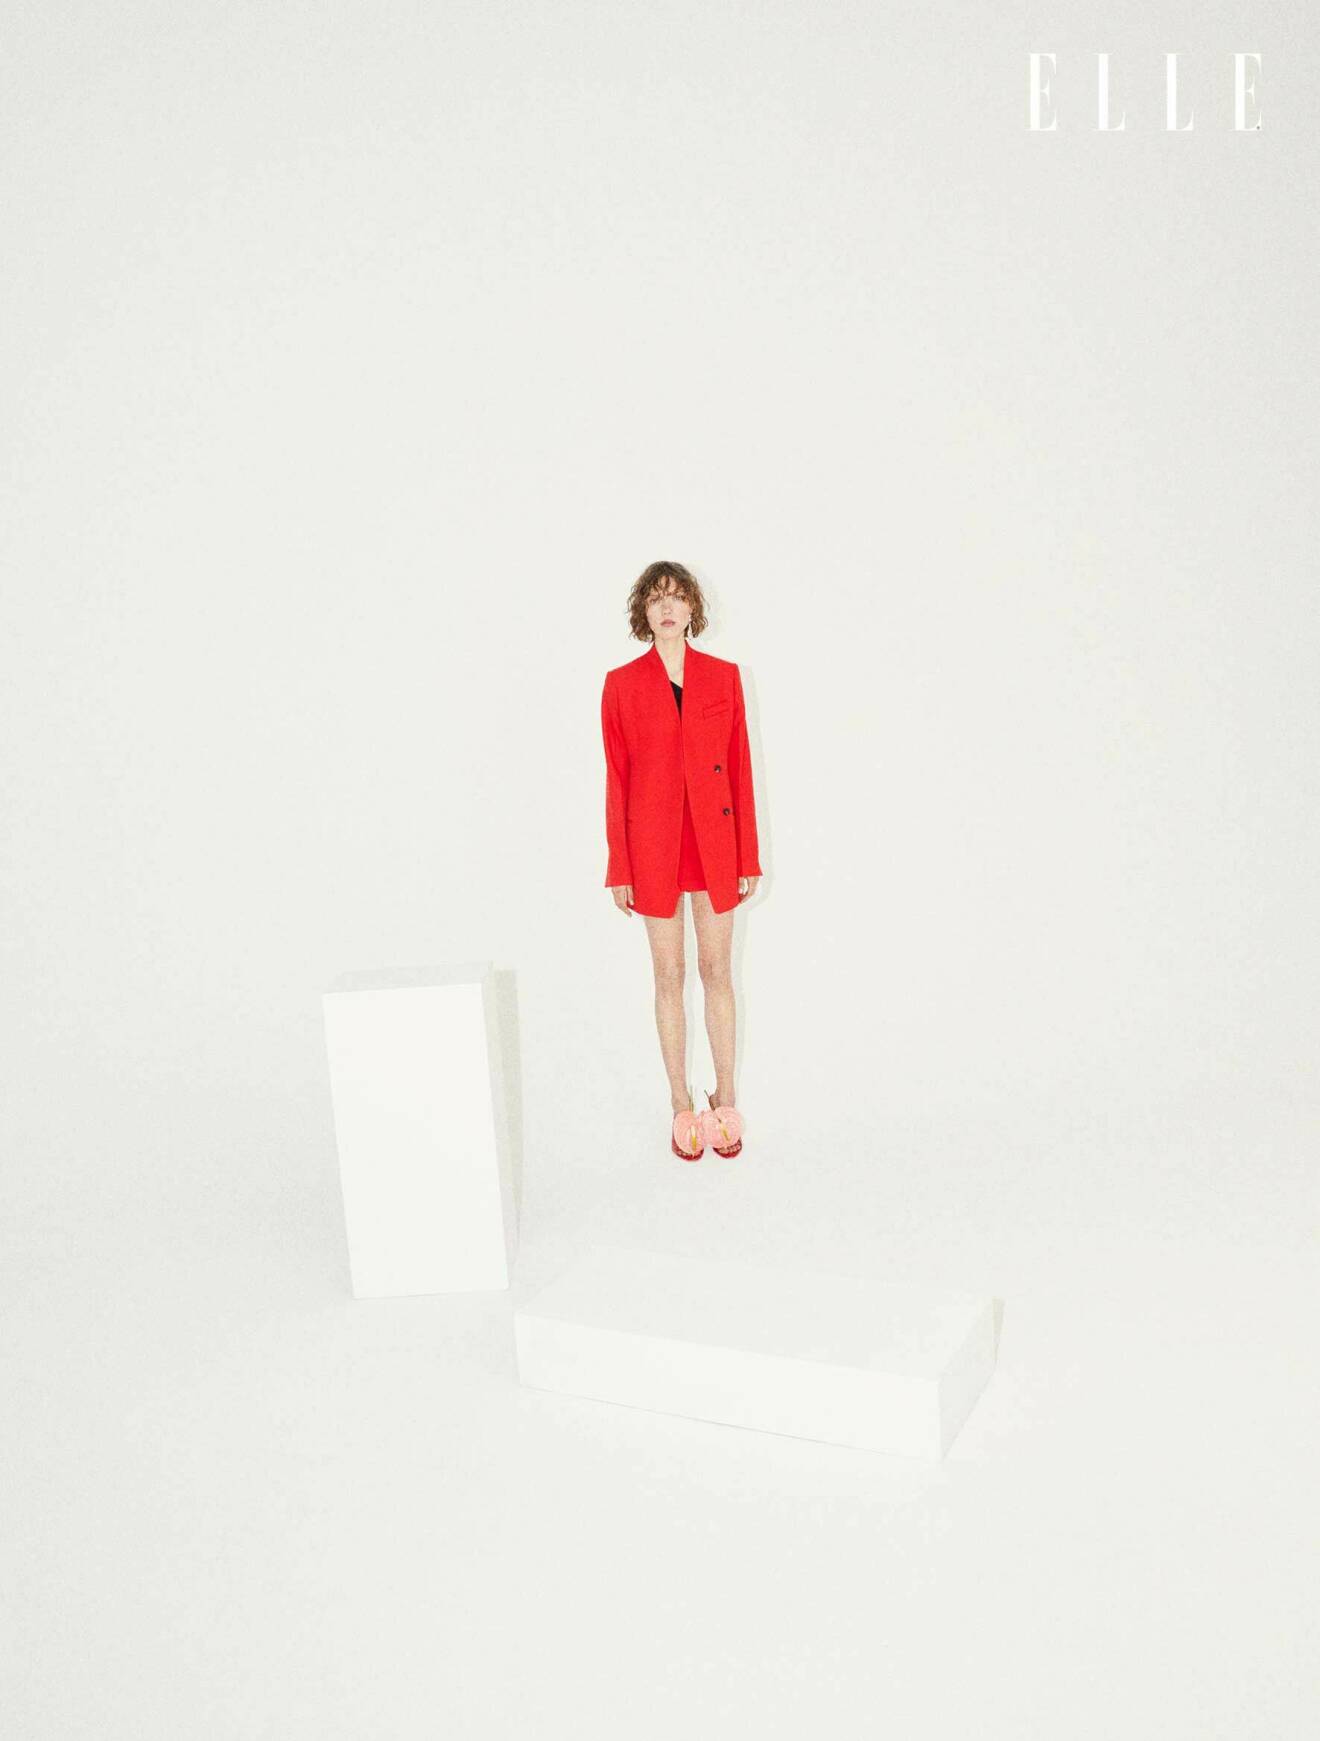 Modellen har på sig en röd kavaj, kjol och skor, allt från Salvatore Ferragamo.